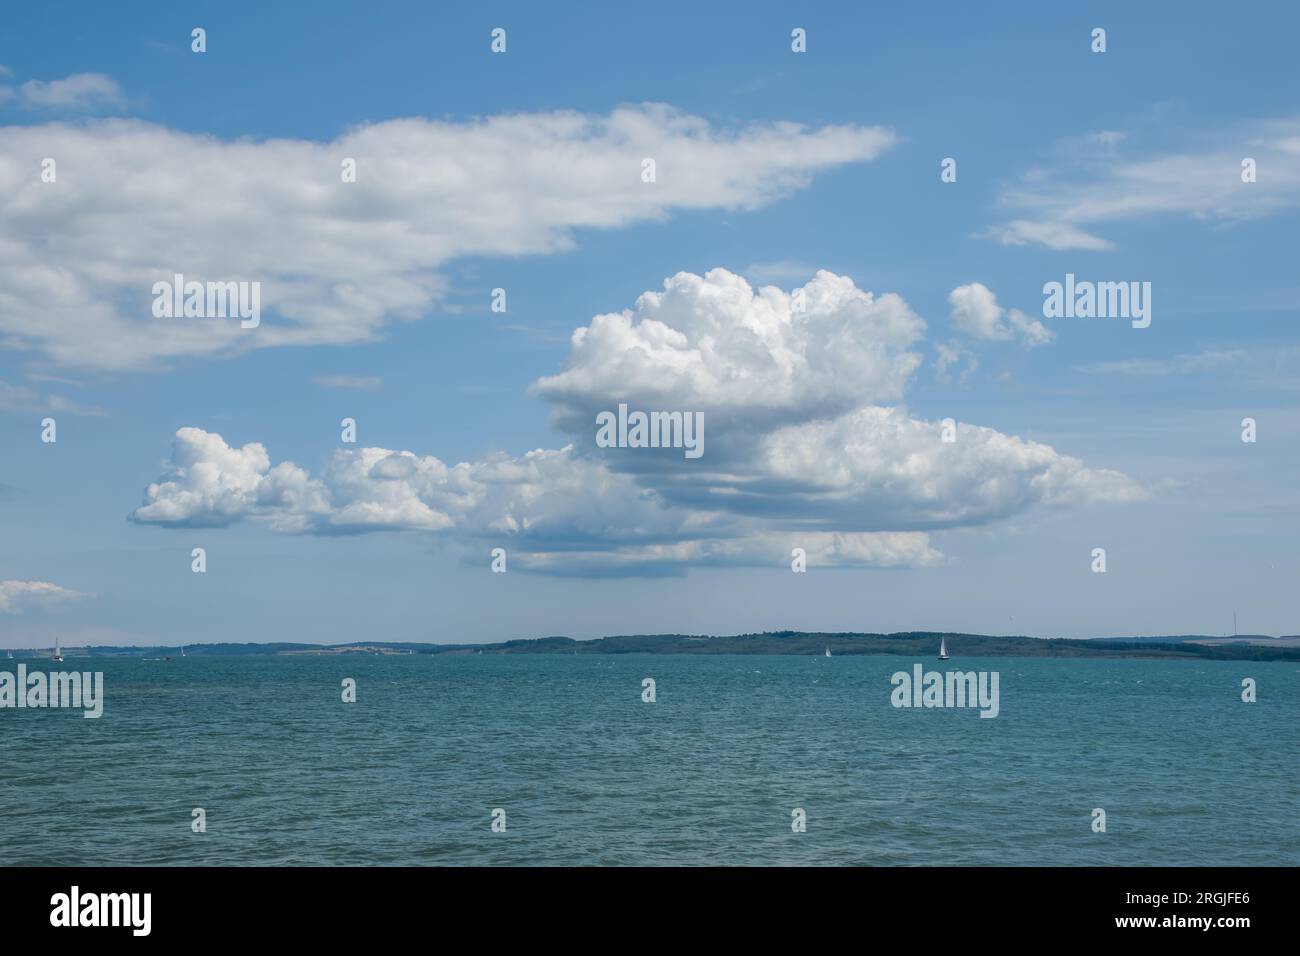 esponjosas nubes blancas en el verano contra un cielo azul en forma de ave de presa sobre el mar Foto de stock